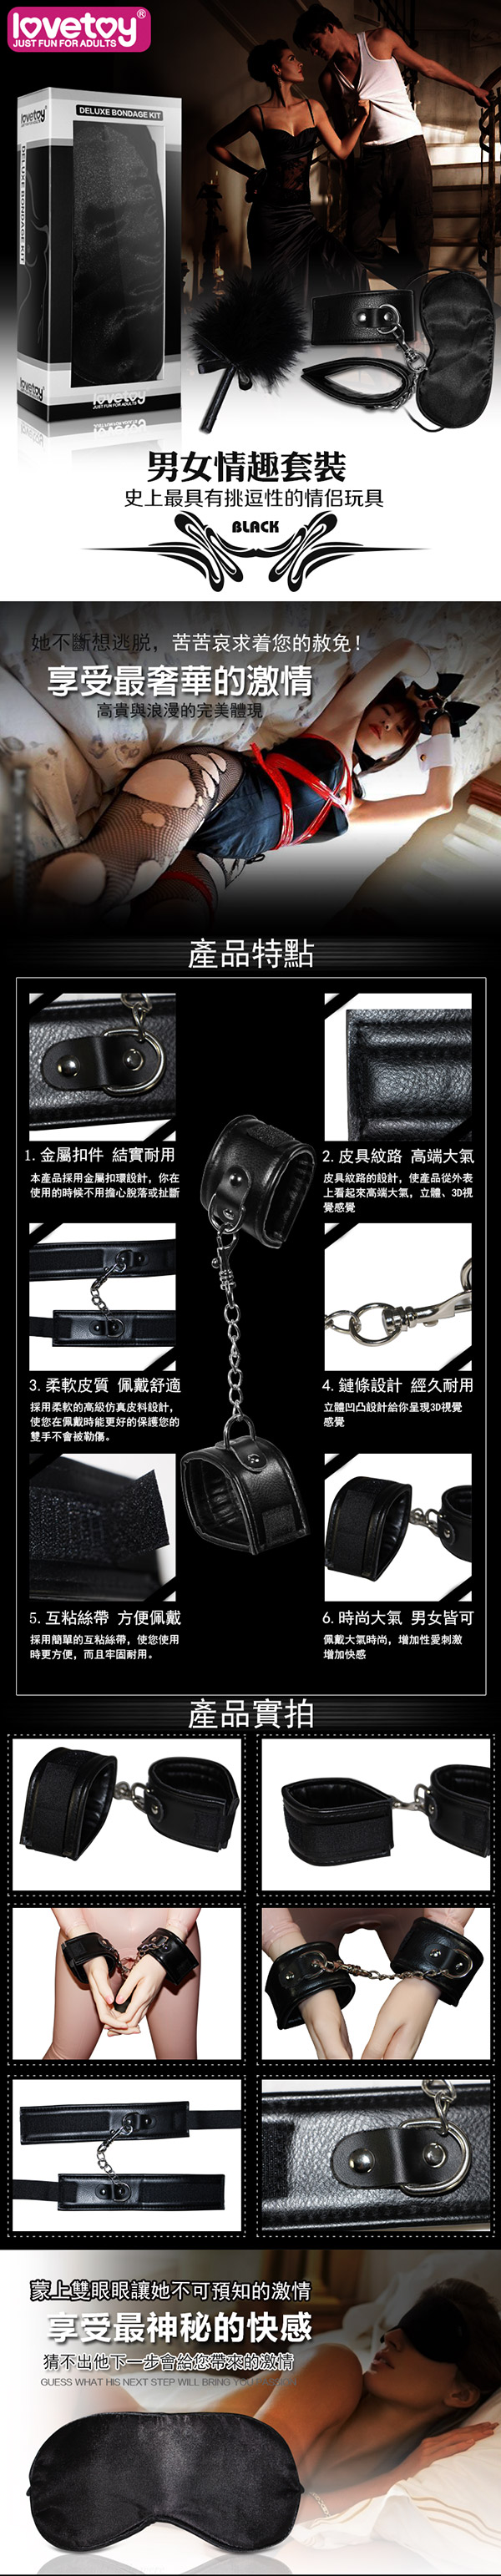 Lovetoy．黑色天使套裝3 -SM超值禮盒組(眼罩+手銬+調情羽毛)